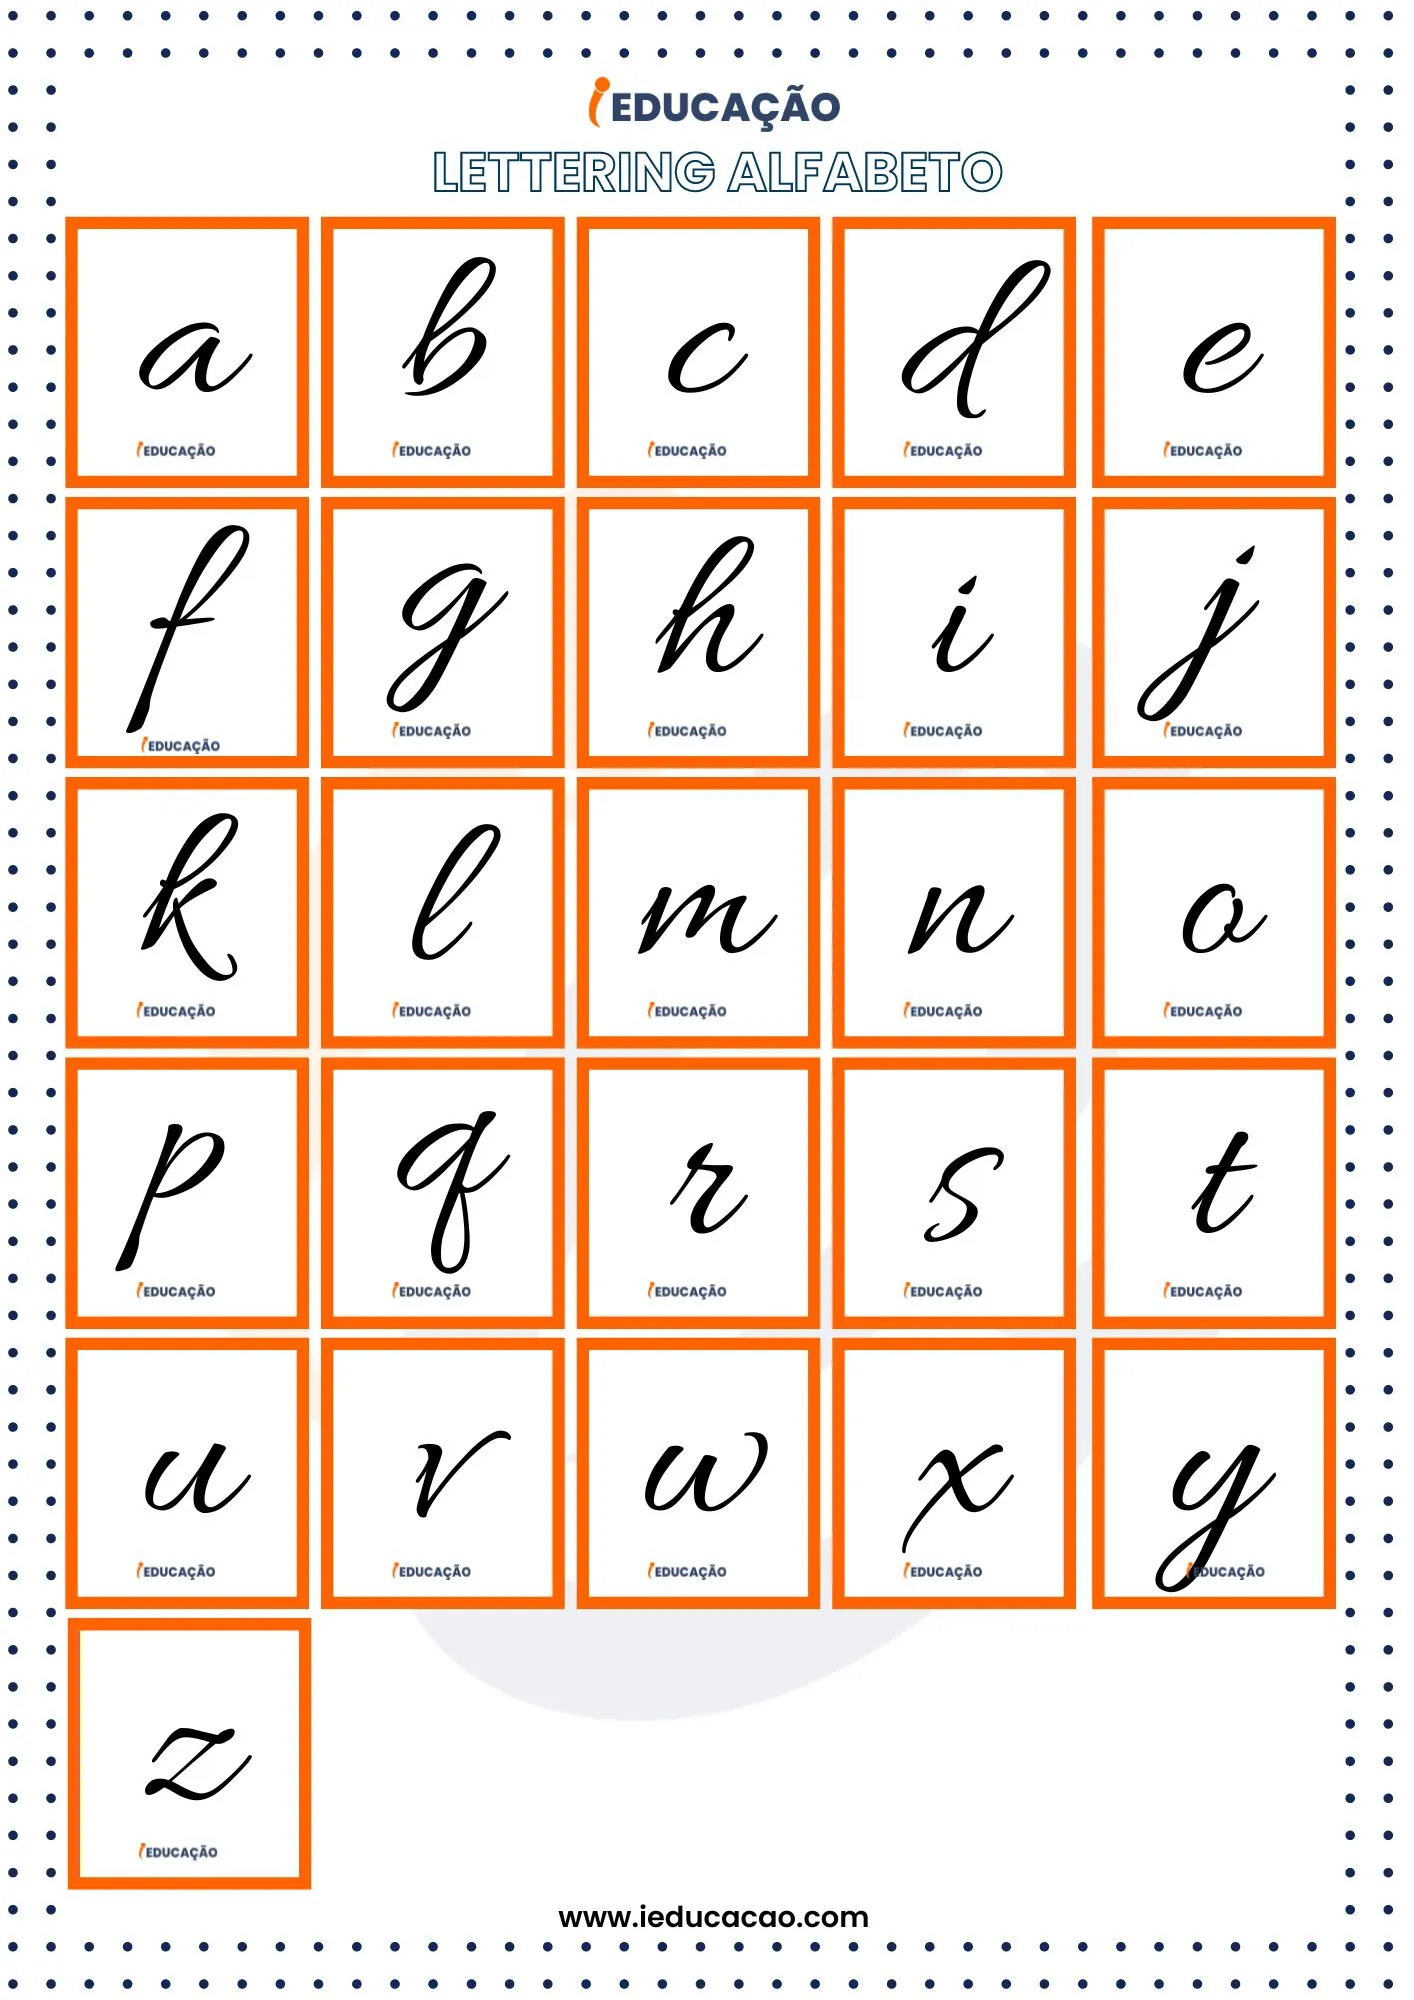 Lettering Alfabeto do A ao Z